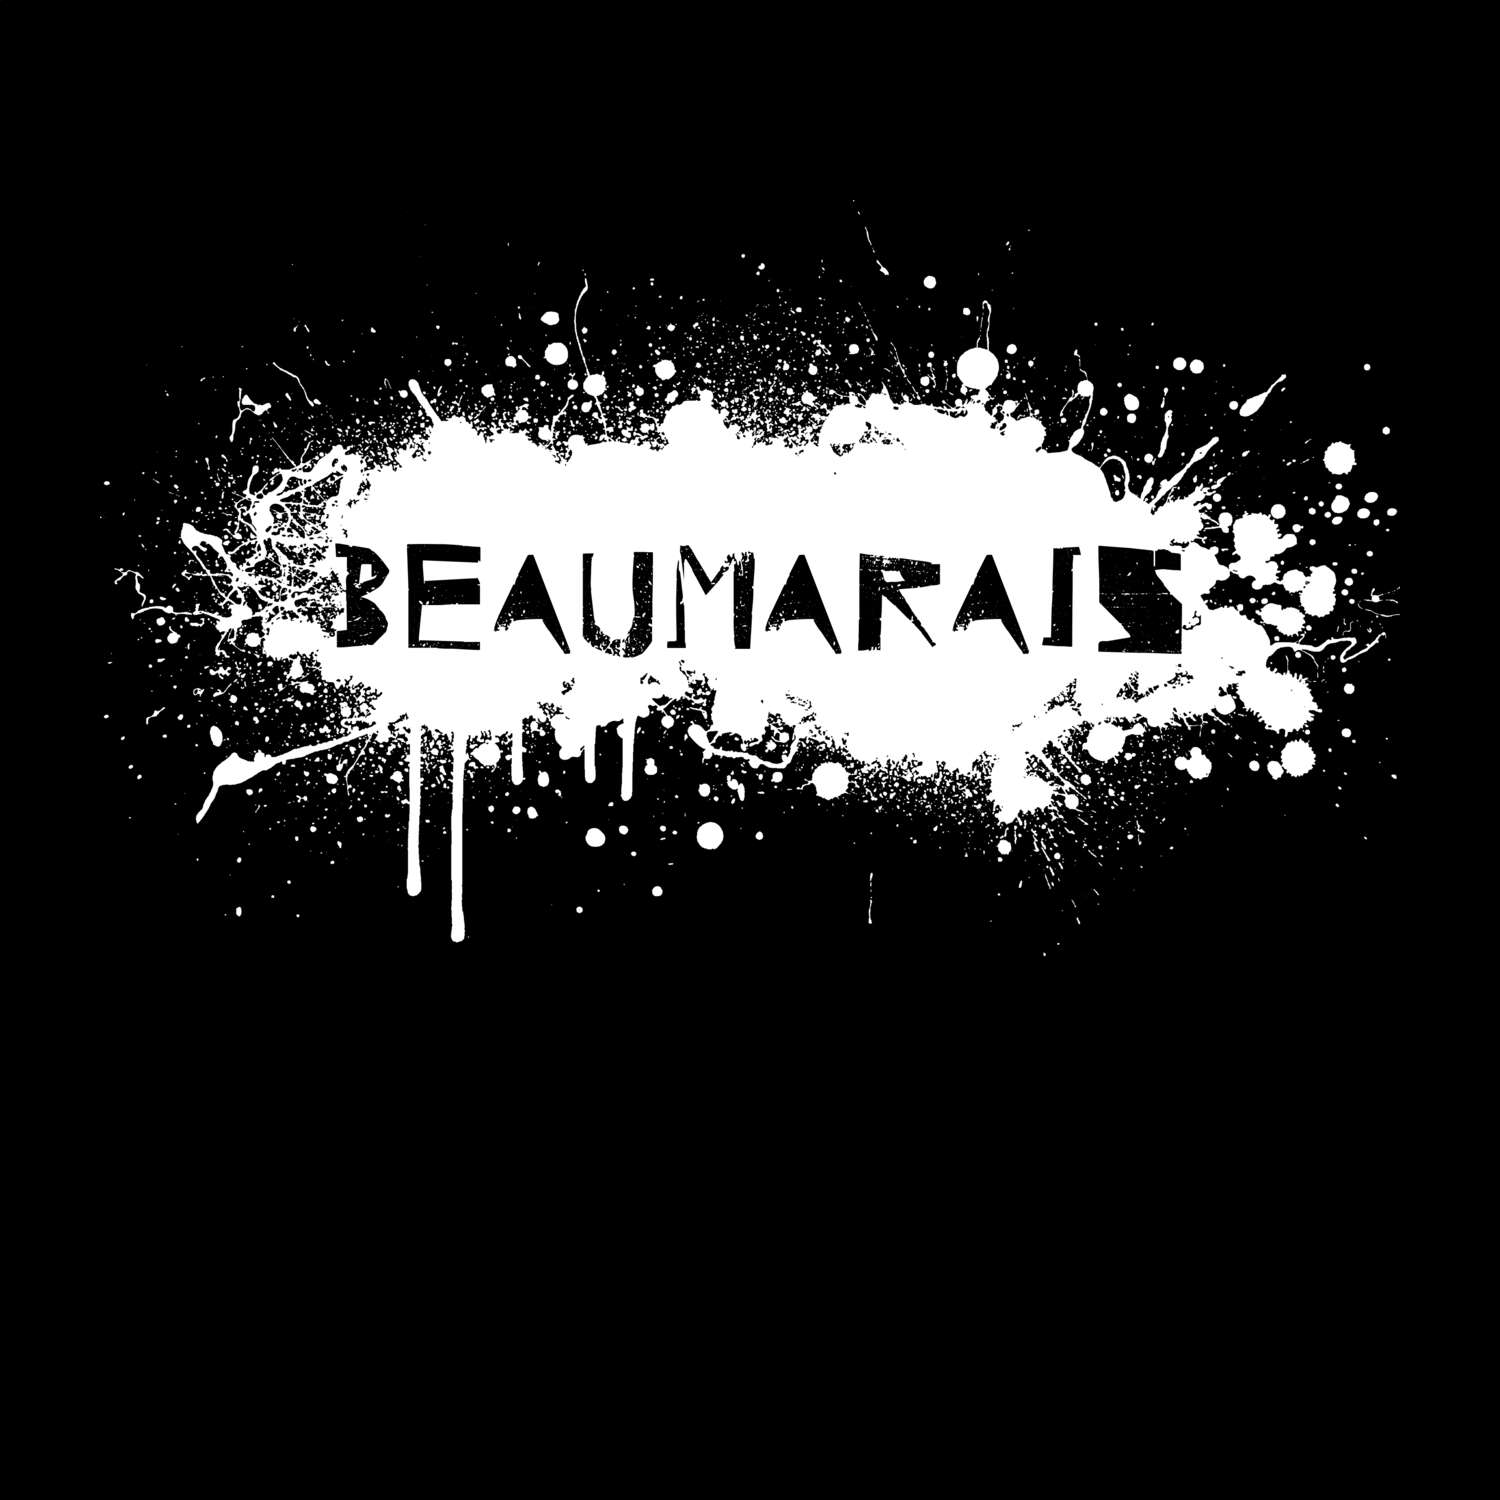 Beaumarais T-Shirt »Paint Splash Punk«